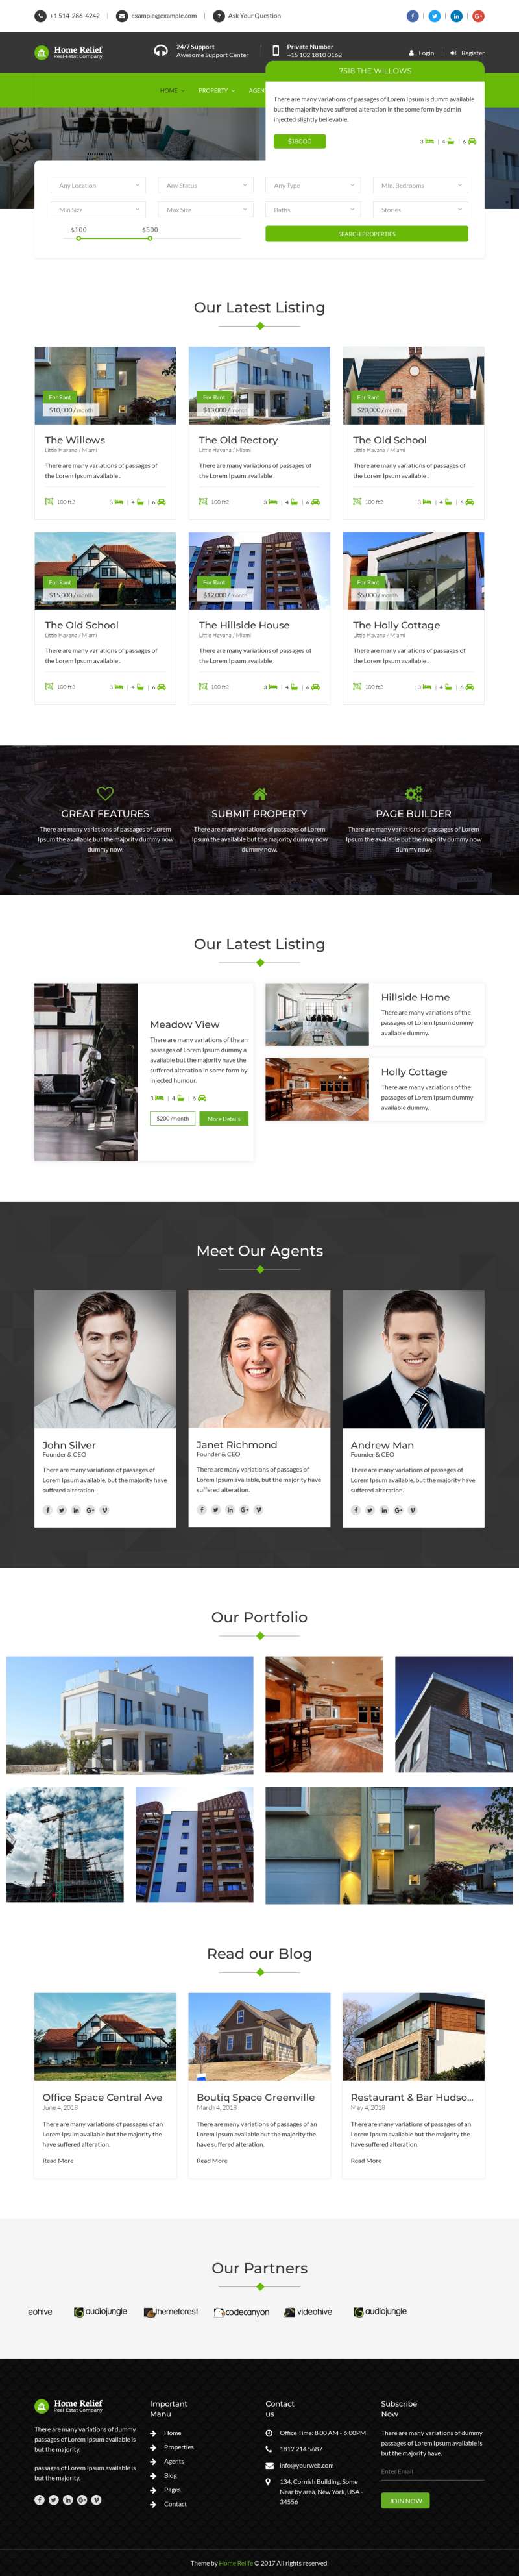 绿色Bootstrap响应式房产中介网站模板